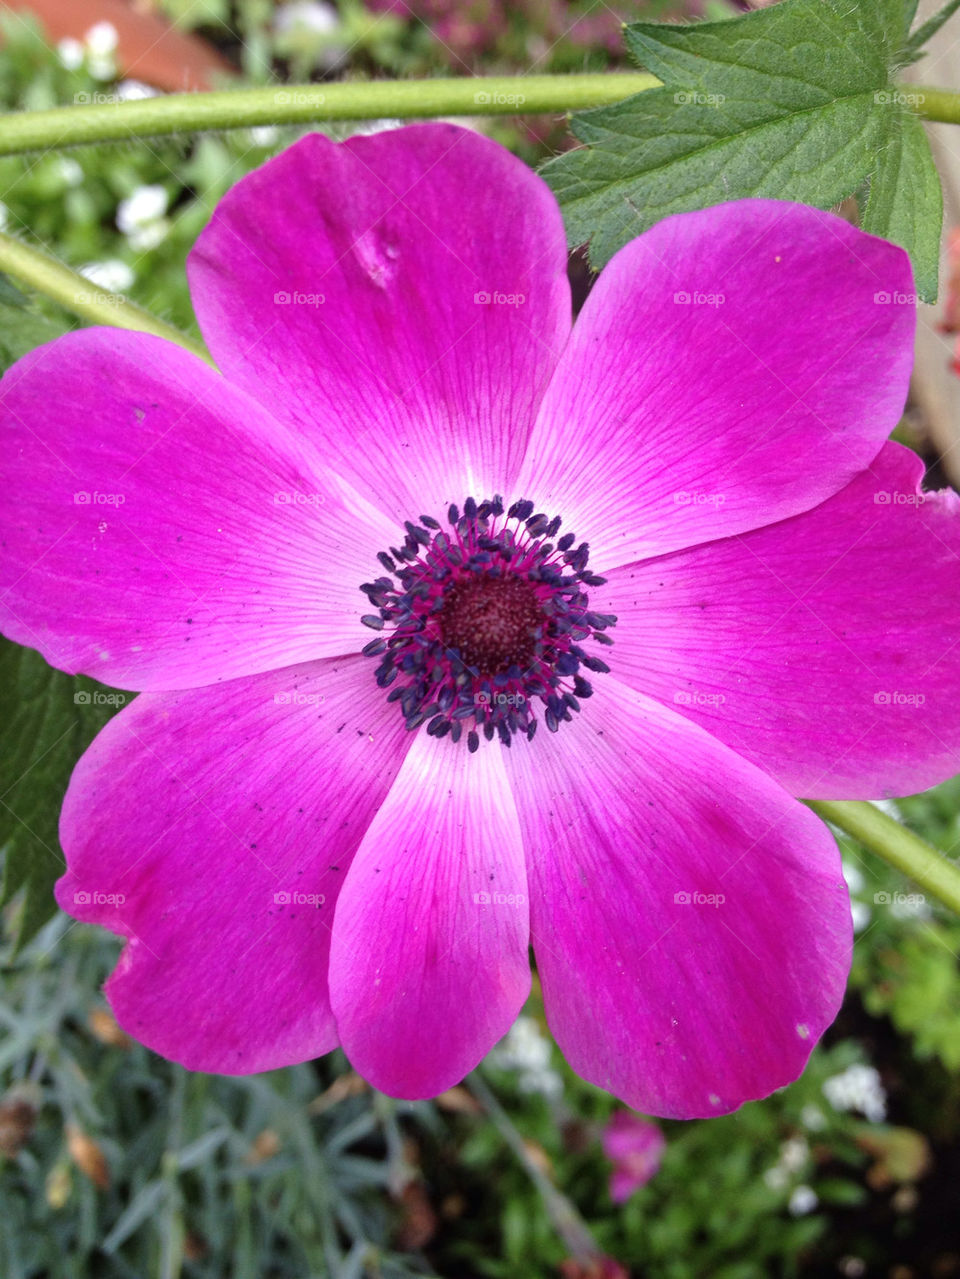 green garden pink flower by gsplan